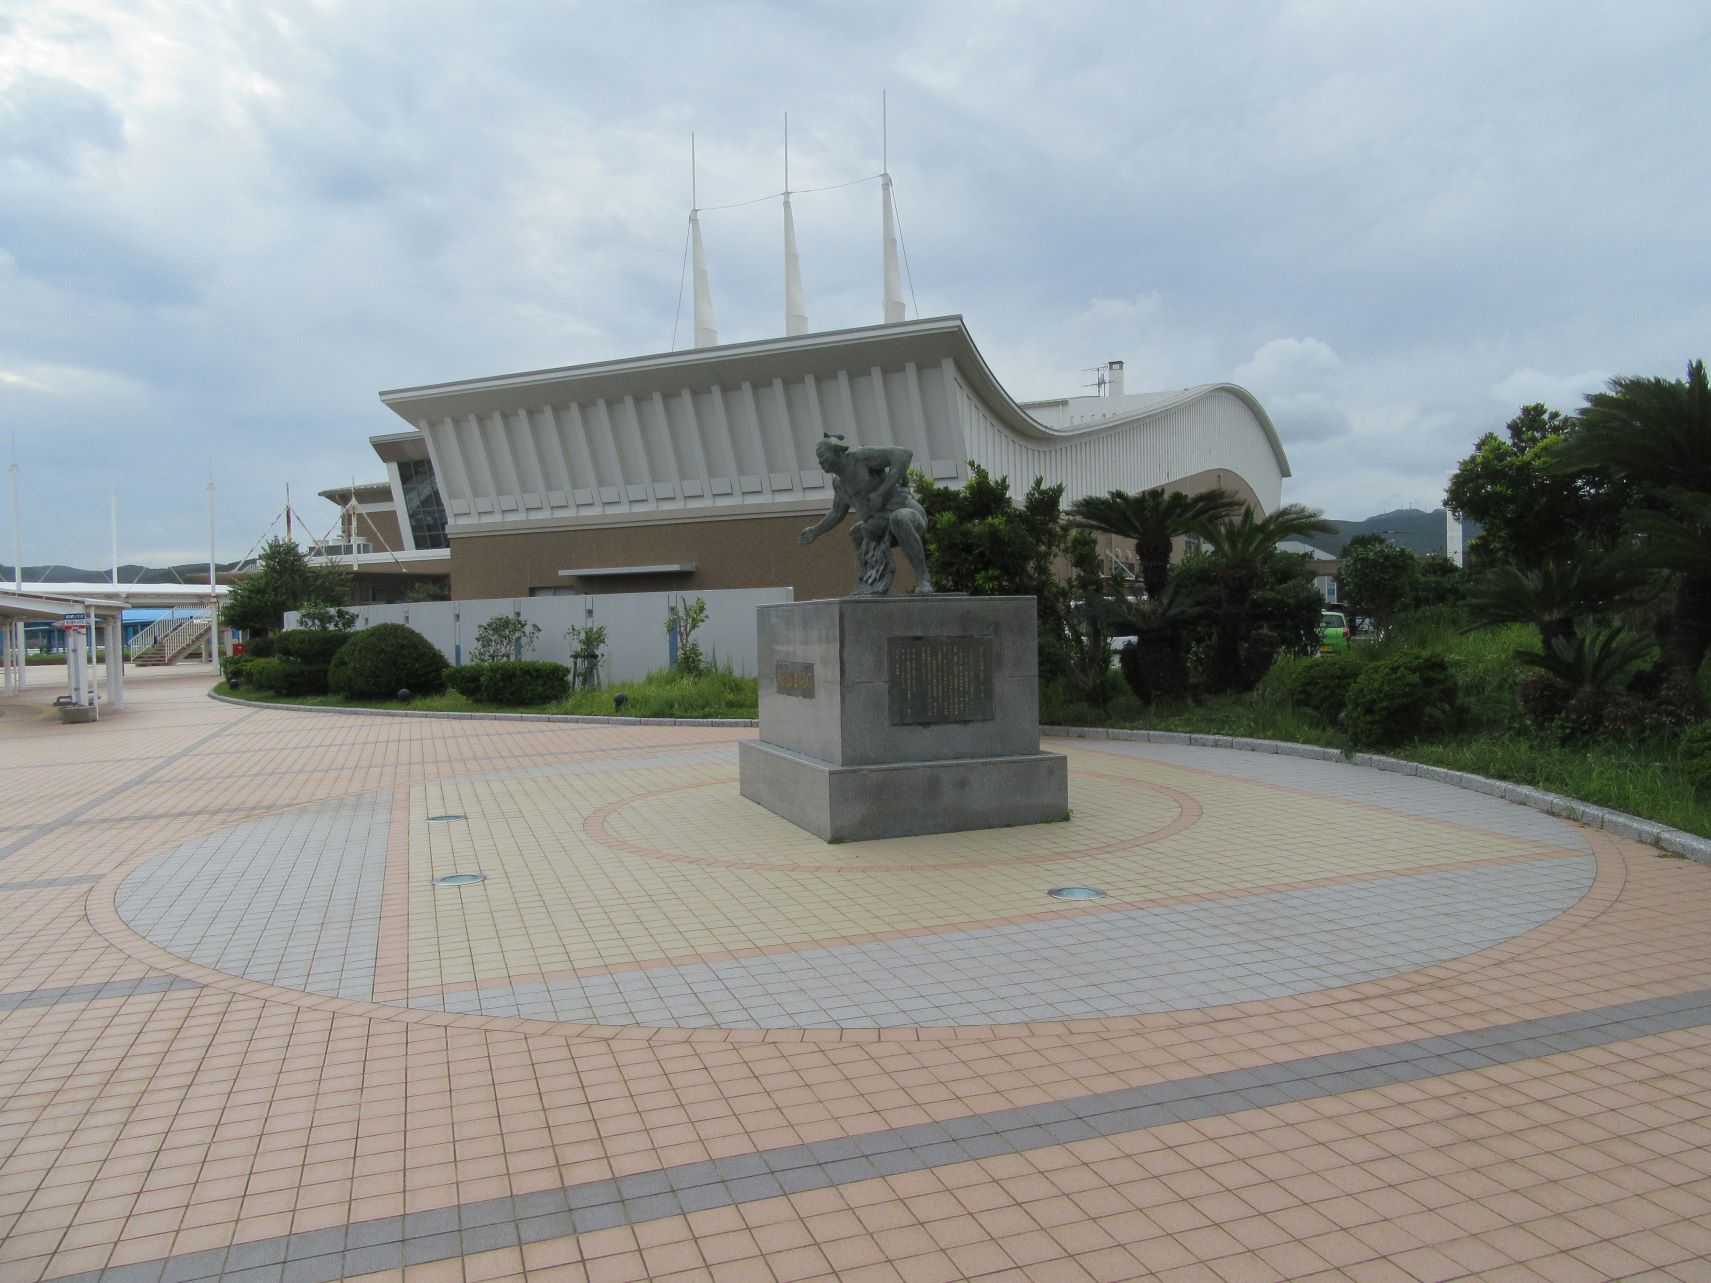 長崎県南松浦郡新上五島町の有川港ターミナル付近にある、第五十代横綱佐田の山関之像と、後ろに見える有川港ターミナル。